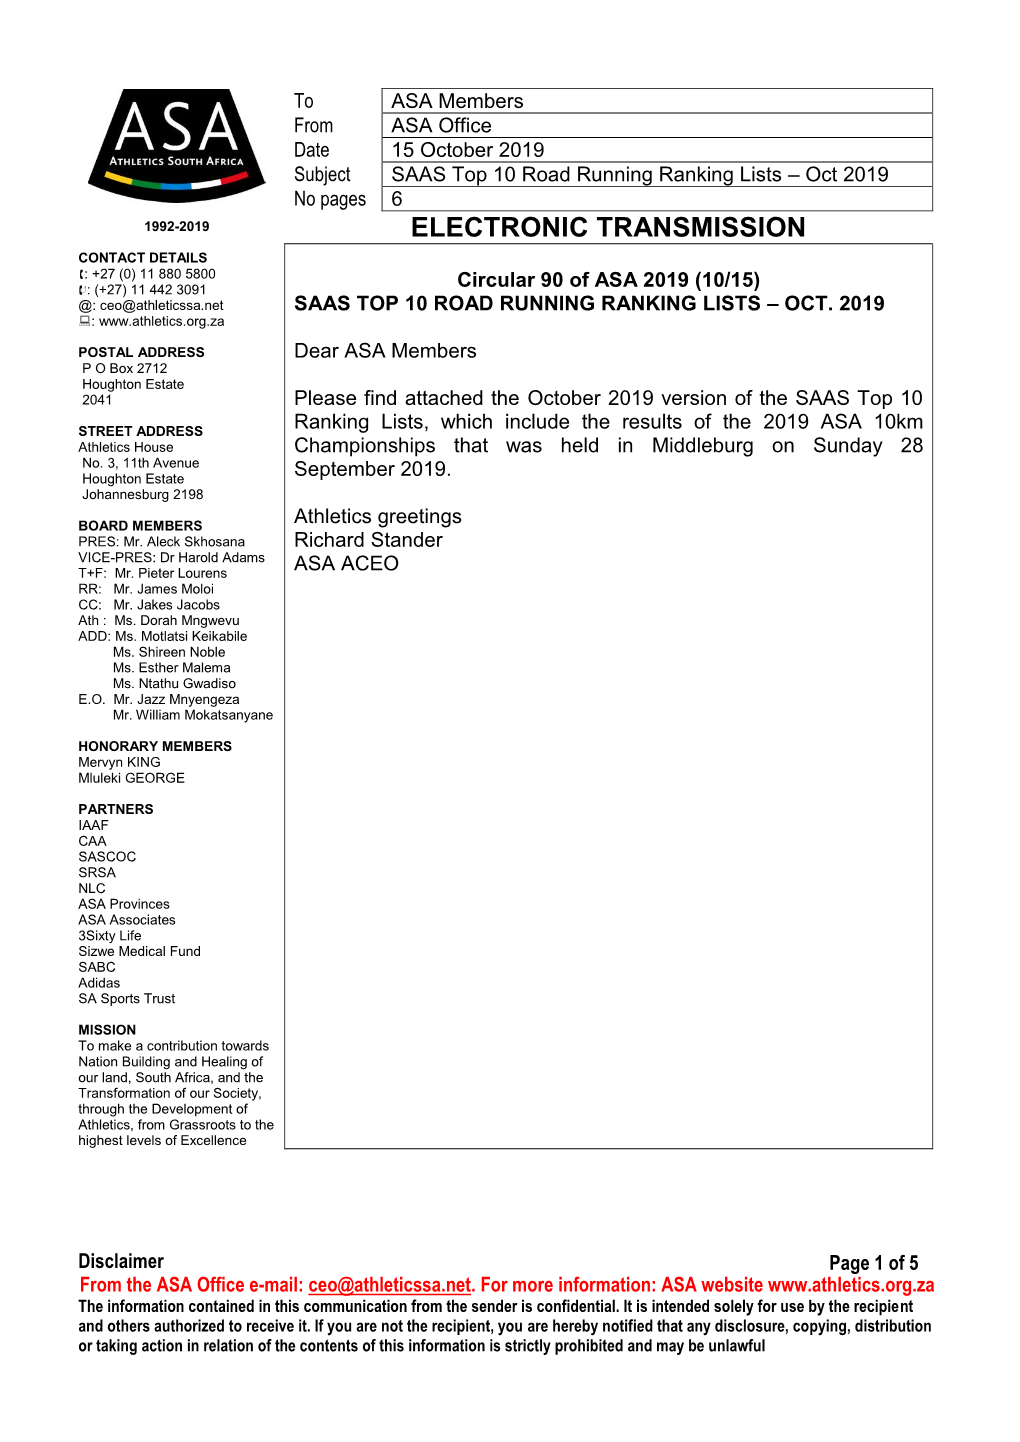 Electronic Transmission